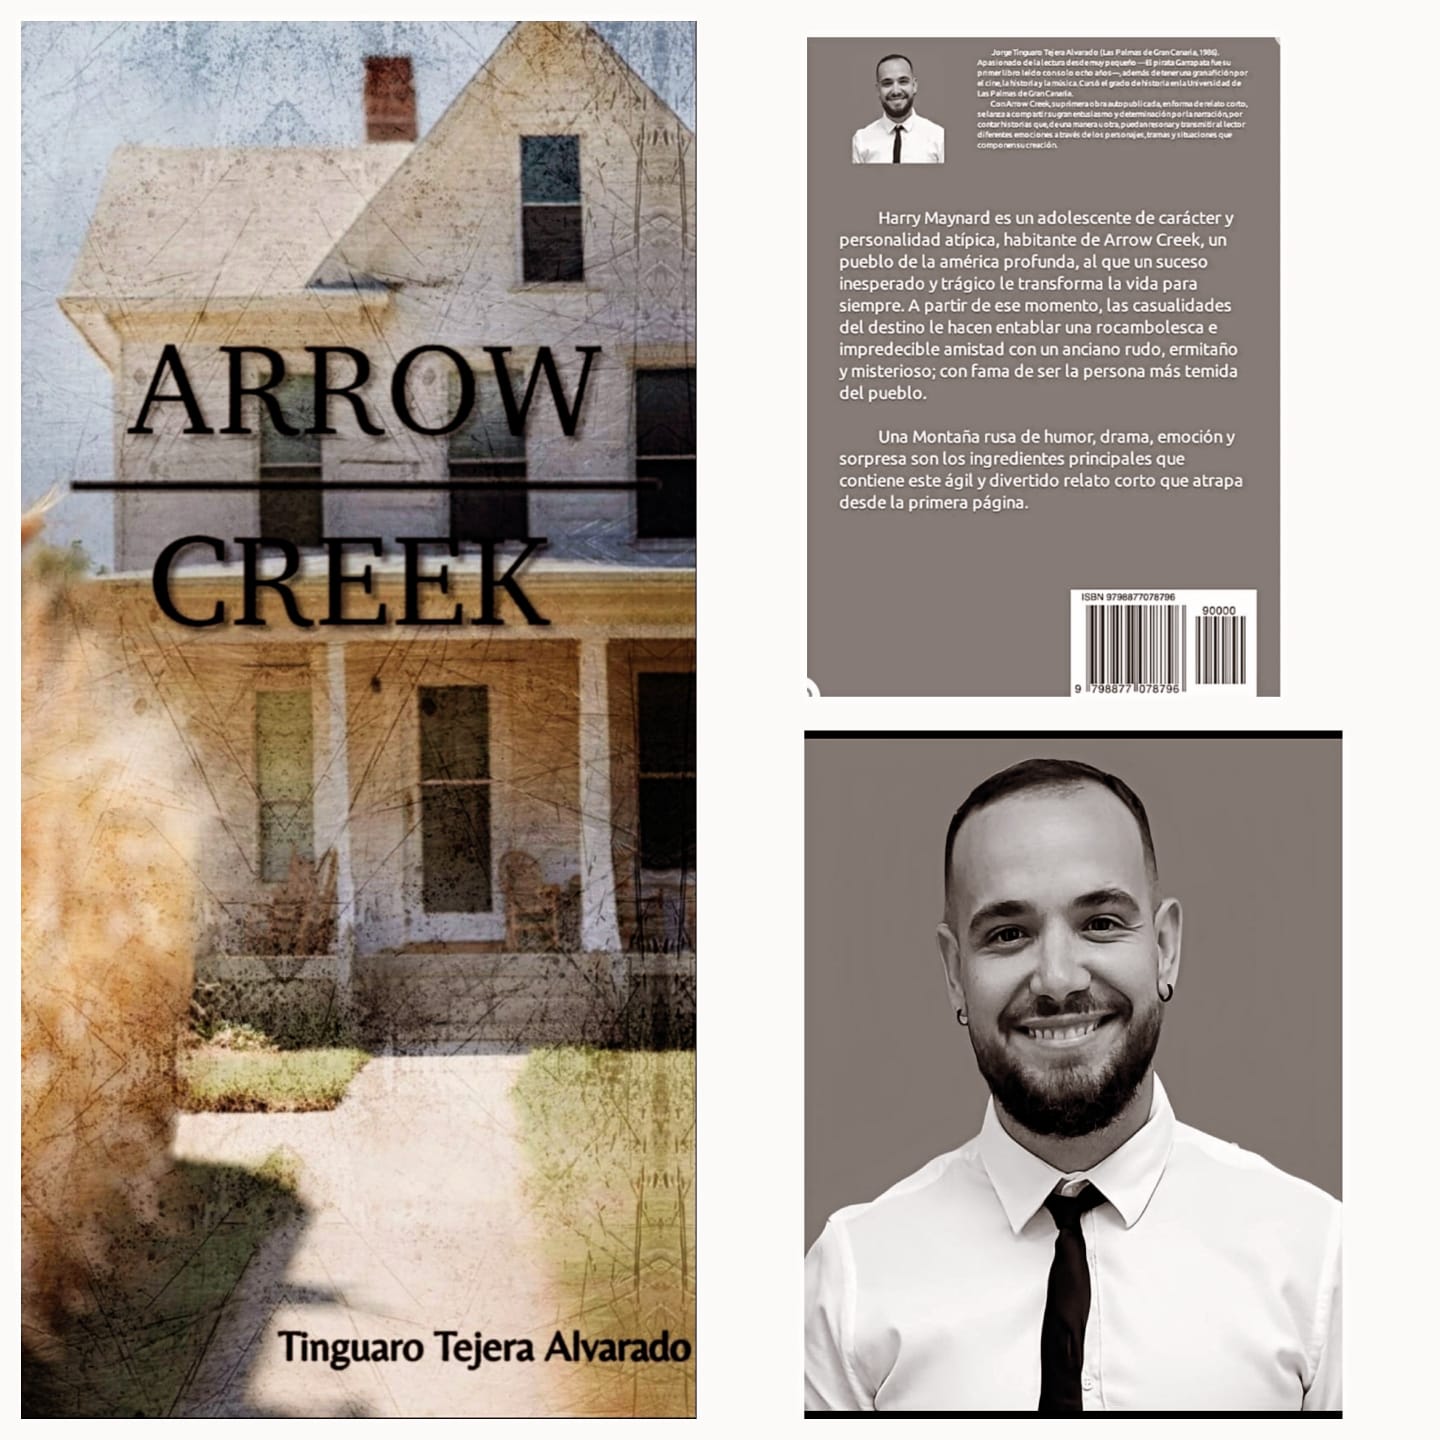 Joge Tinguaro Tejera Alvarado saca a la venta libro Arrow Creek